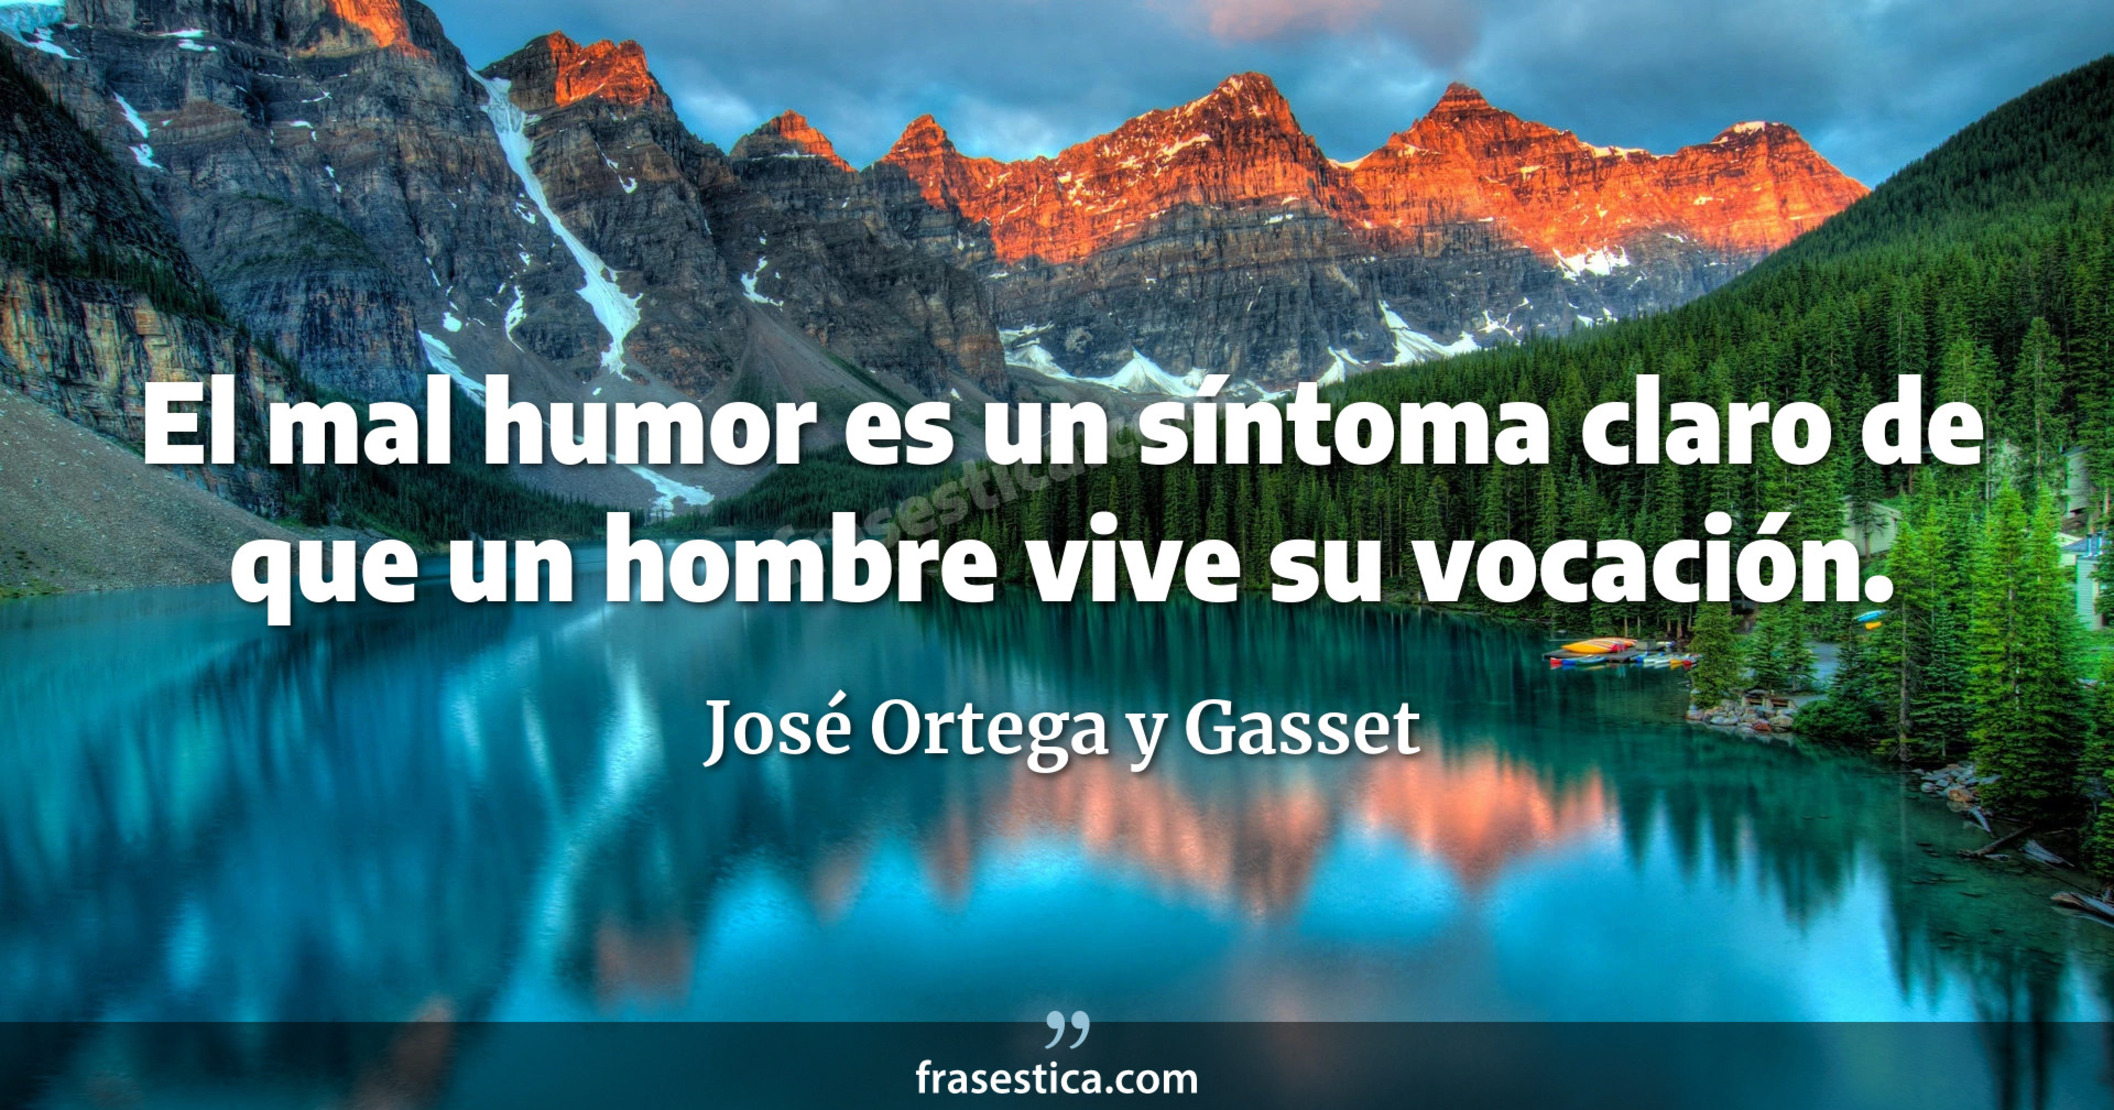 El mal humor es un síntoma claro de que un hombre vive su vocación. - José Ortega y Gasset